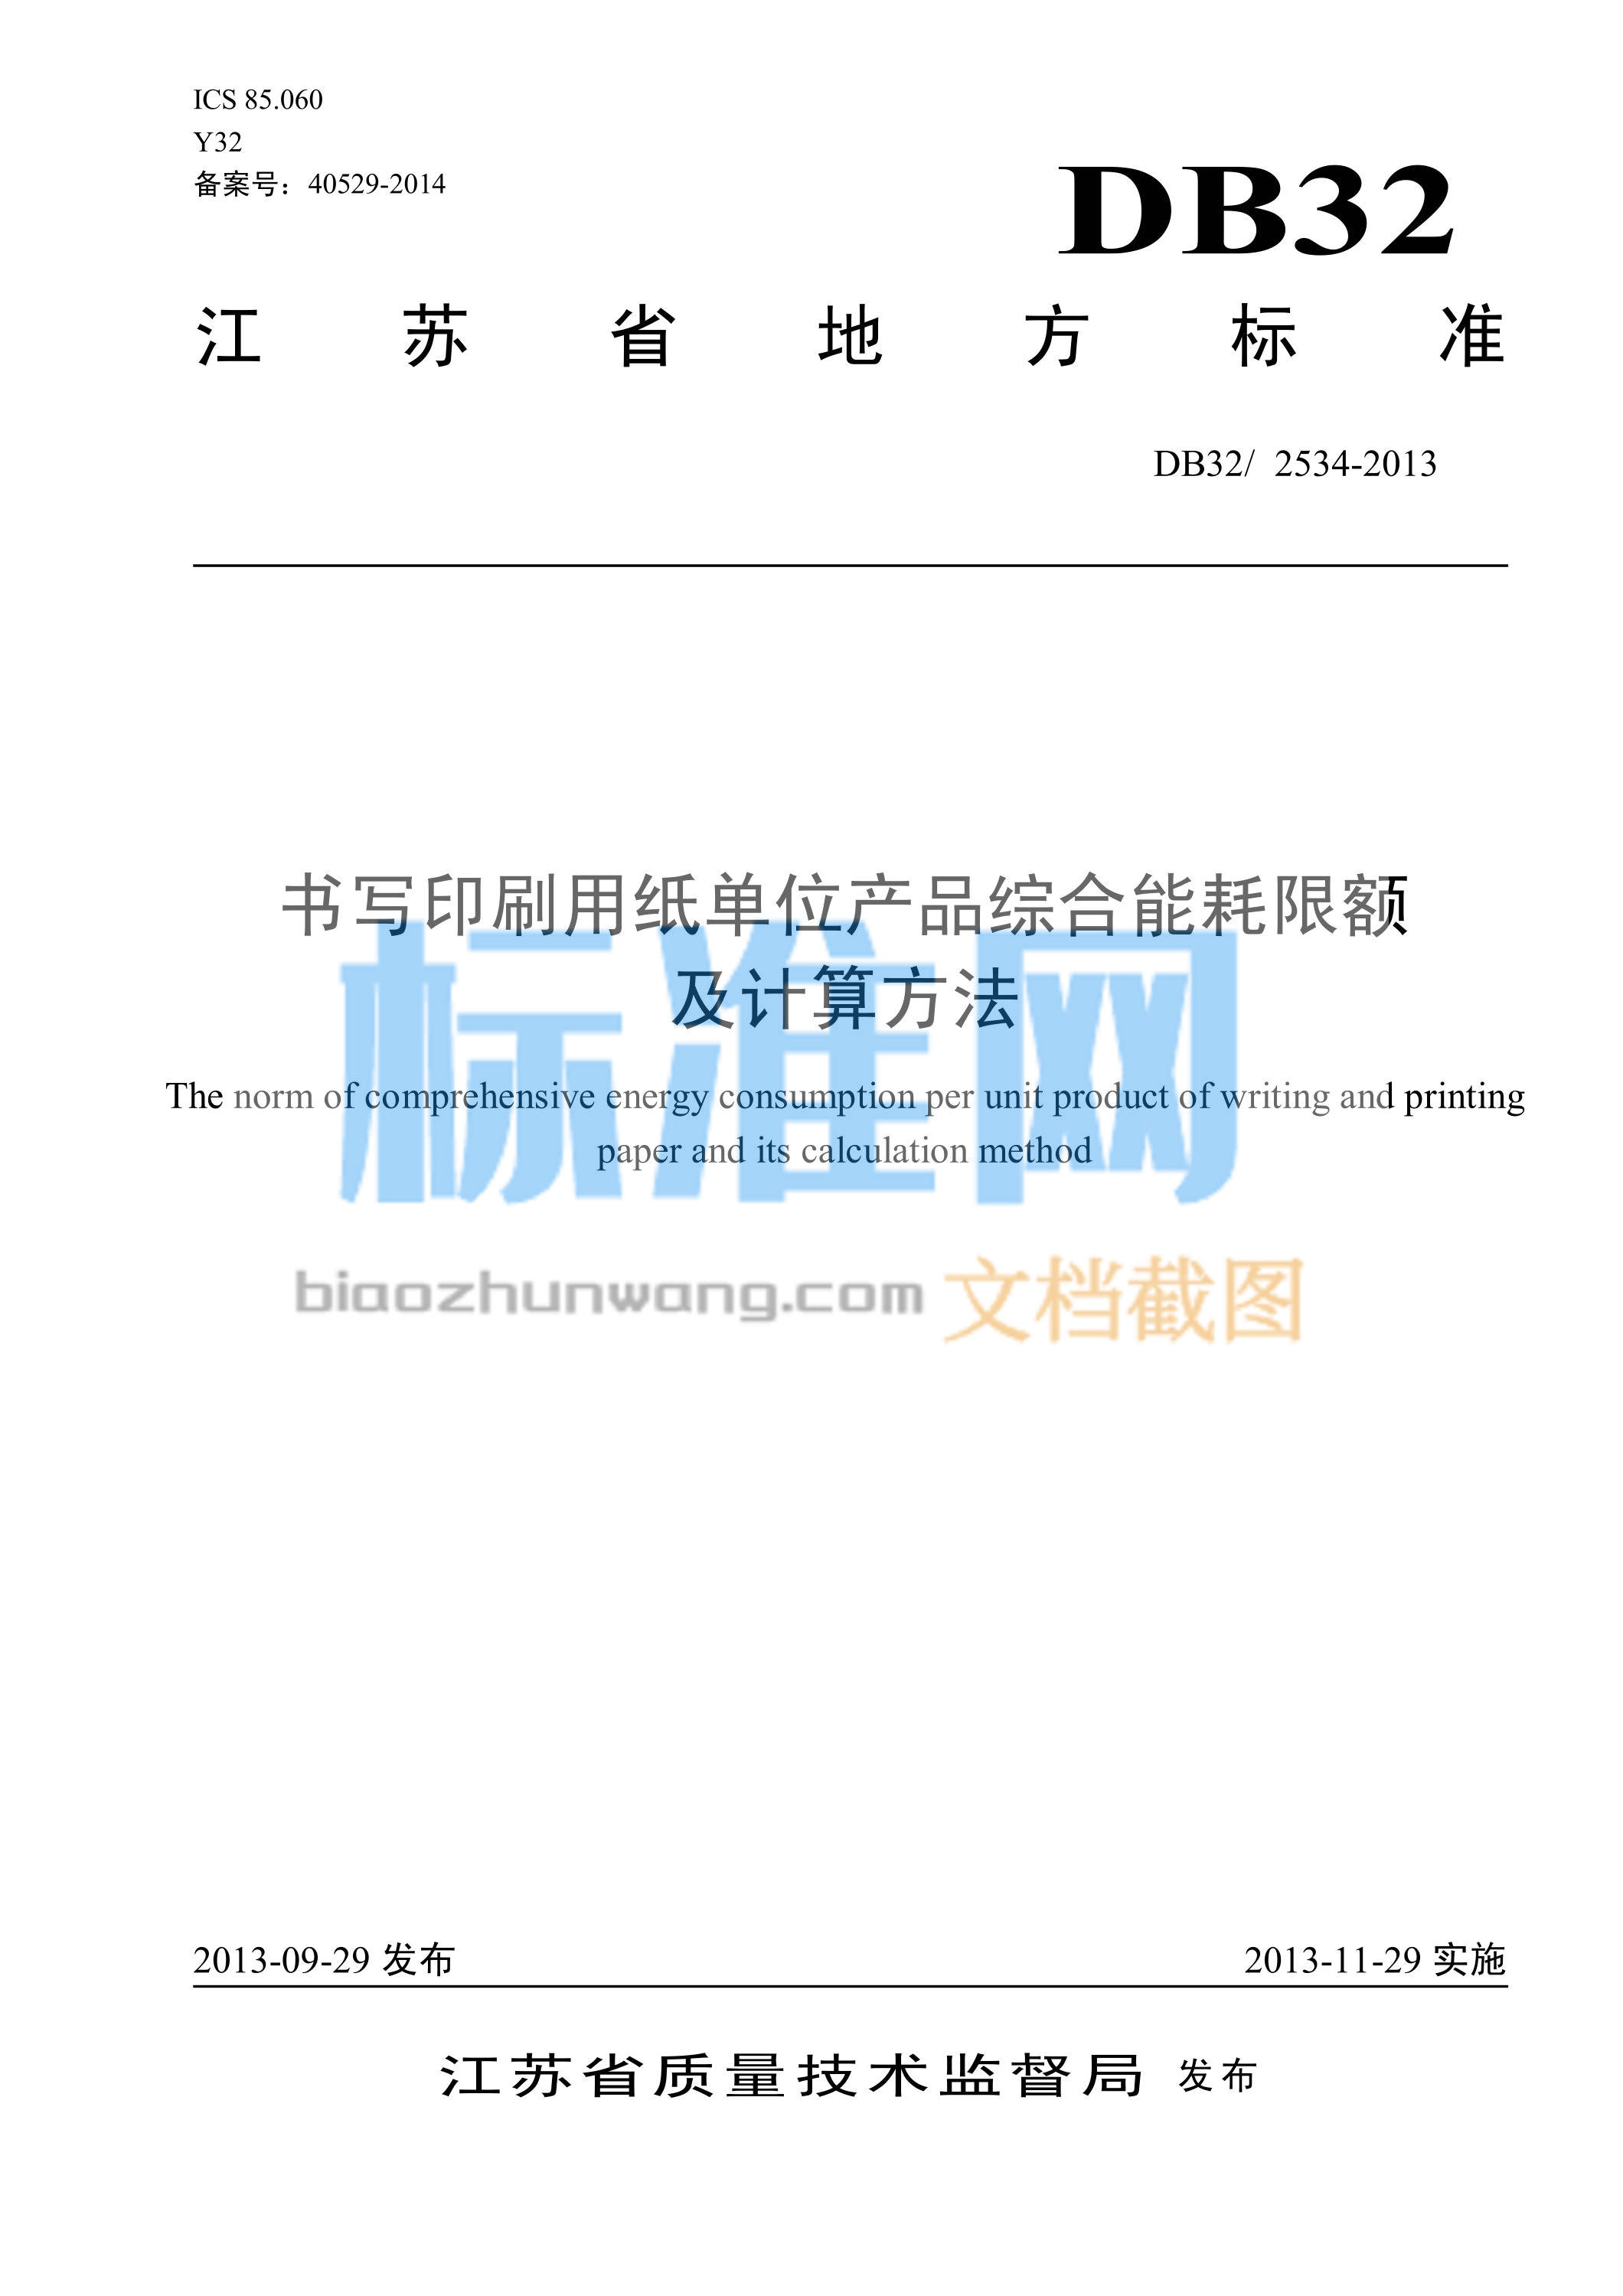 DB32/2534-2013 书写印刷用纸单位产品综合能耗限额及计算方法